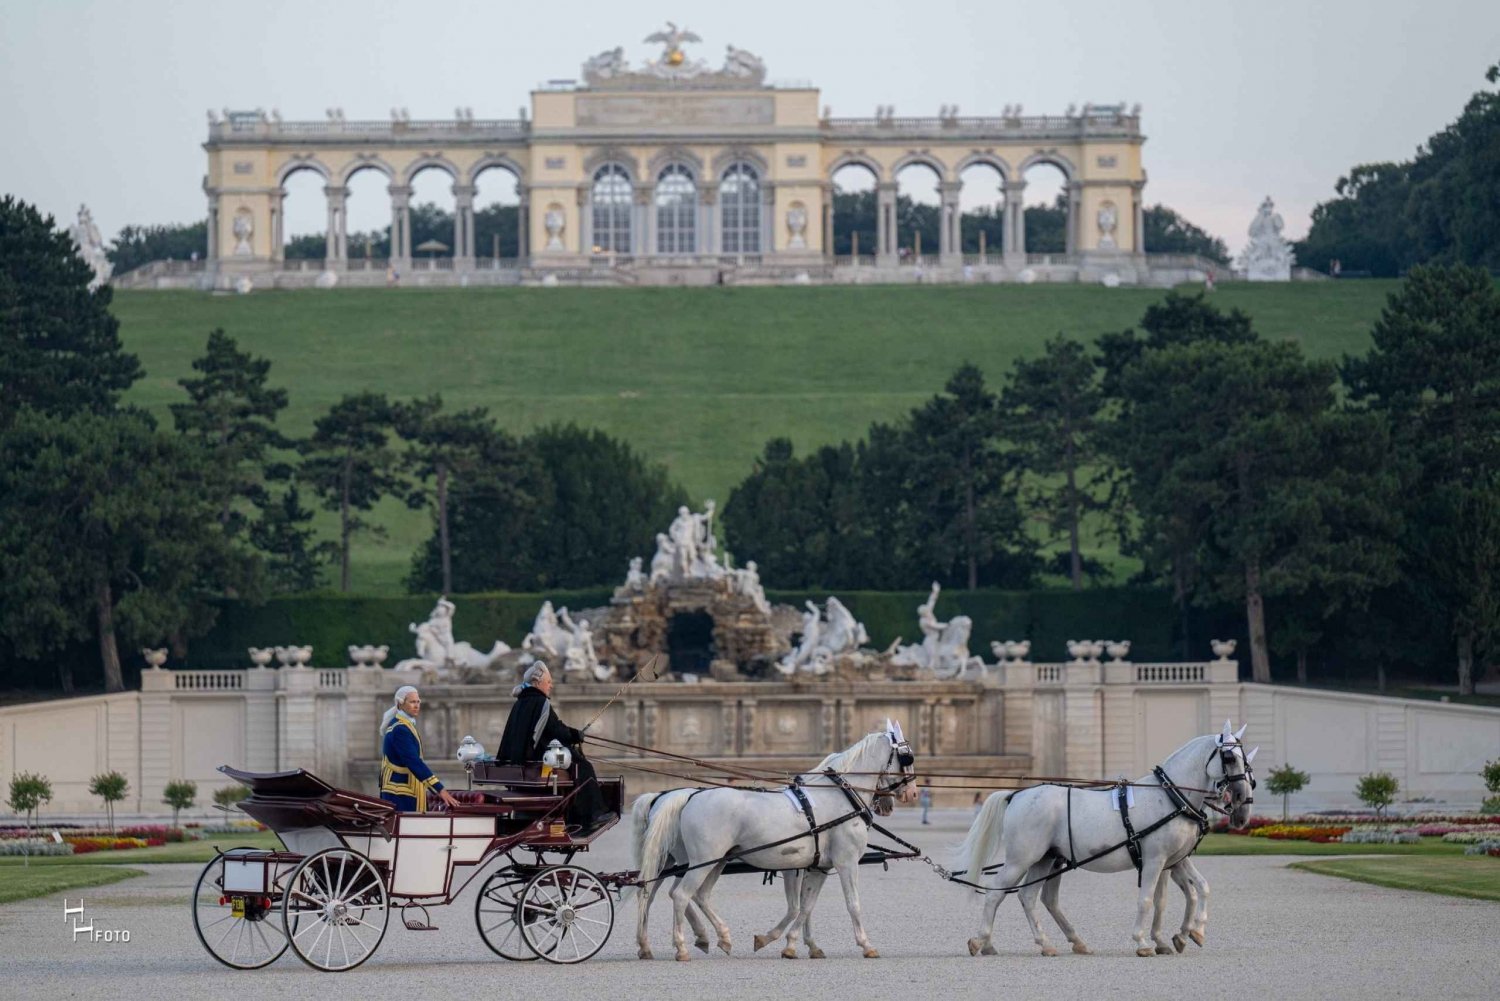 Wenen: koetsrit door de tuinen van het Schönbrunn-paleis